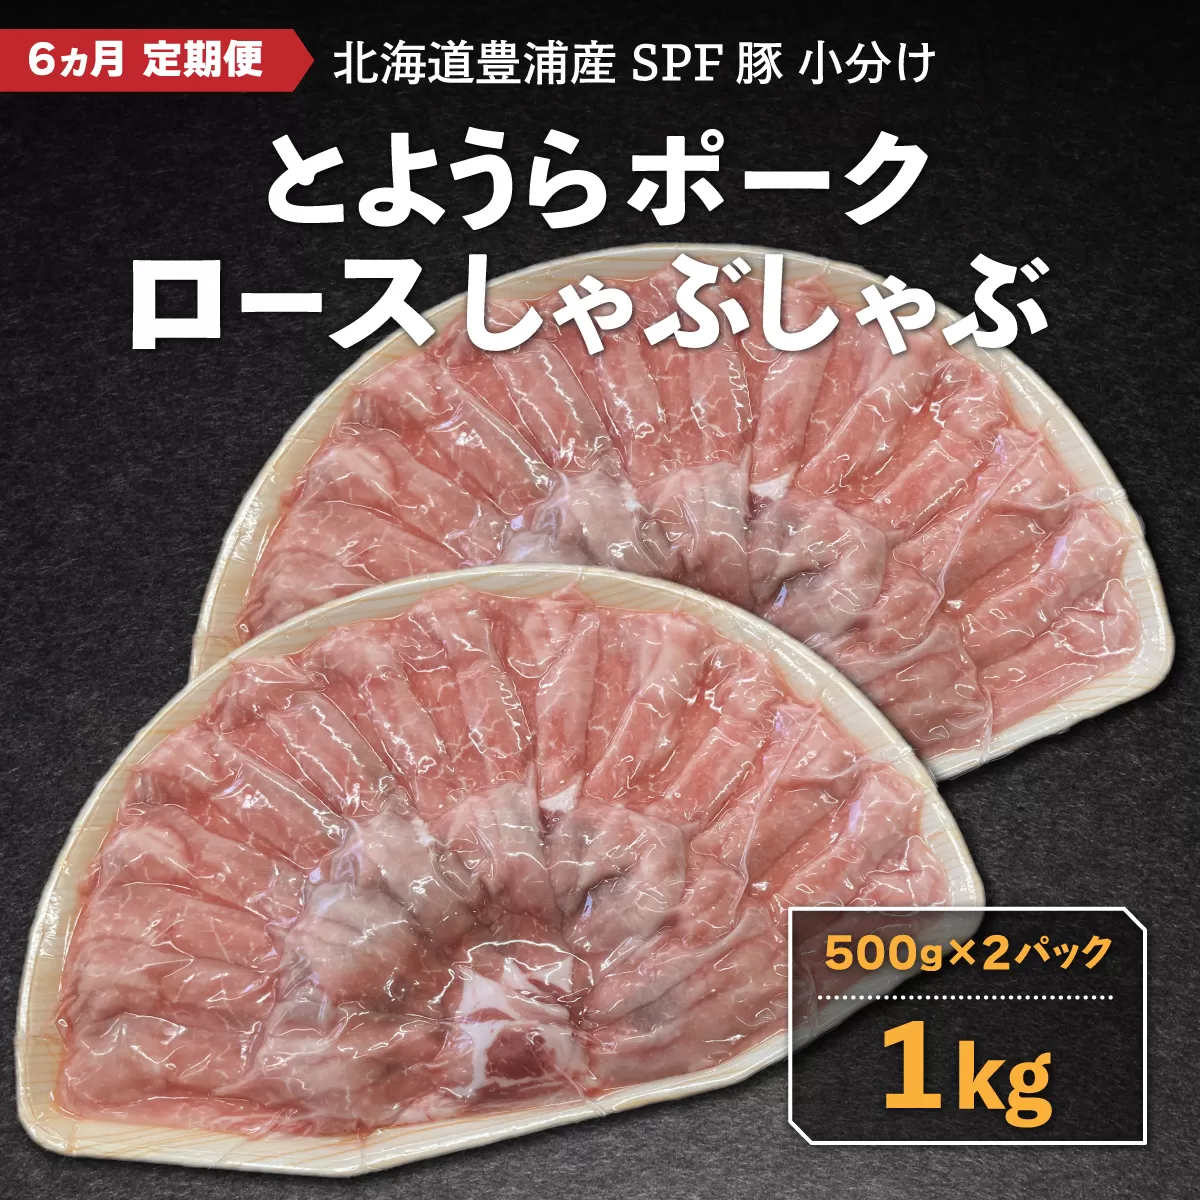 【6ヵ月 定期便 】 豚肉 しゃぶしゃぶ とようらポーク 1kg ロース 豚しゃぶ 北海道 豊浦産 SPF豚 TYUO039